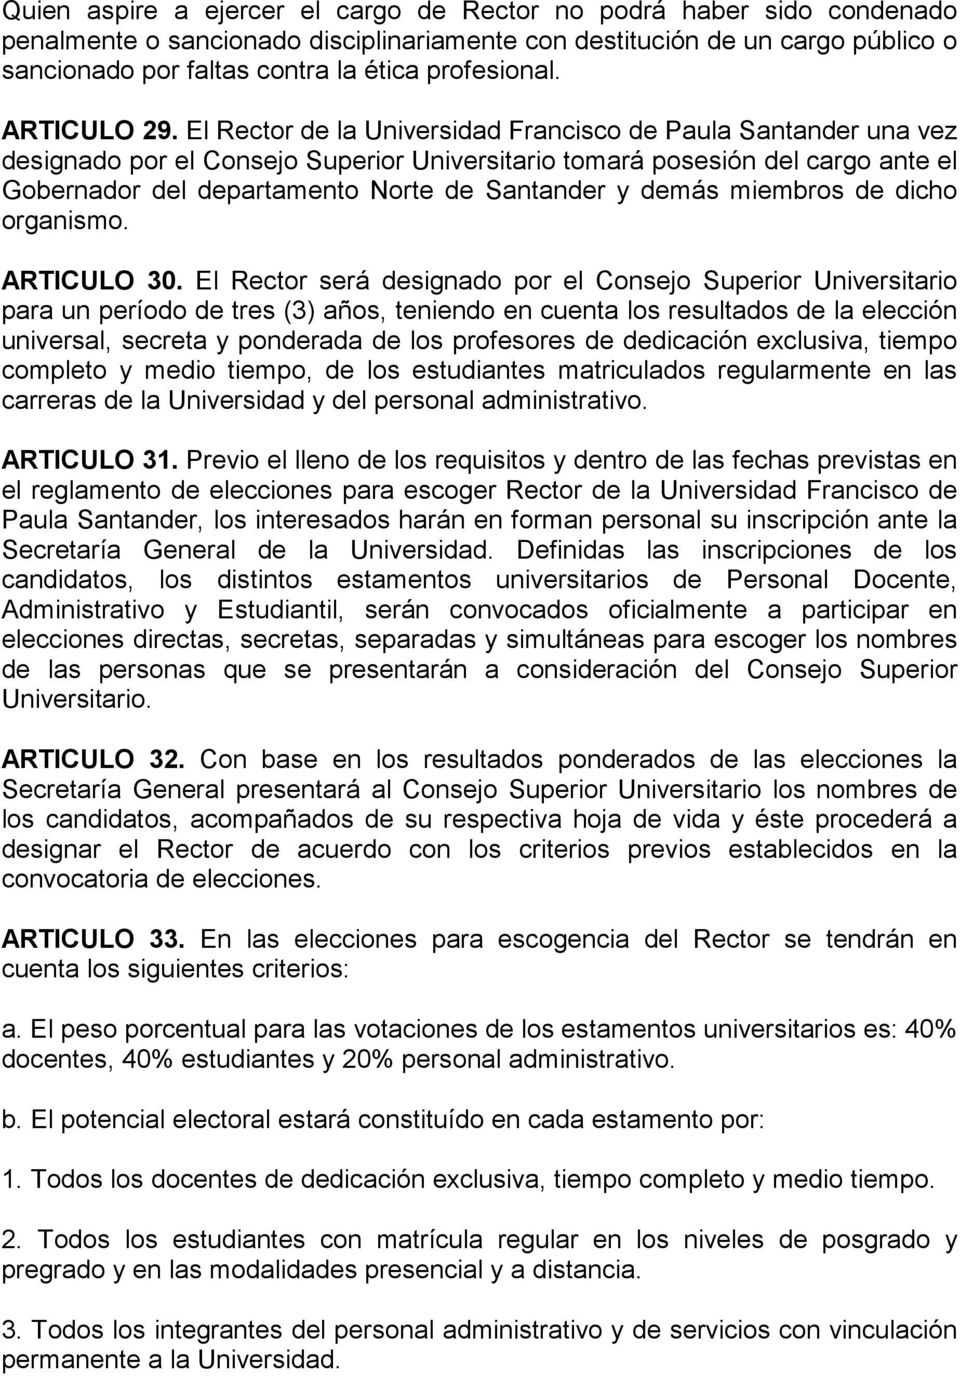 El Rector de la Universidad Francisco de Paula Santander una vez designado por el Consejo Superior Universitario tomará posesión del cargo ante el Gobernador del departamento Norte de Santander y